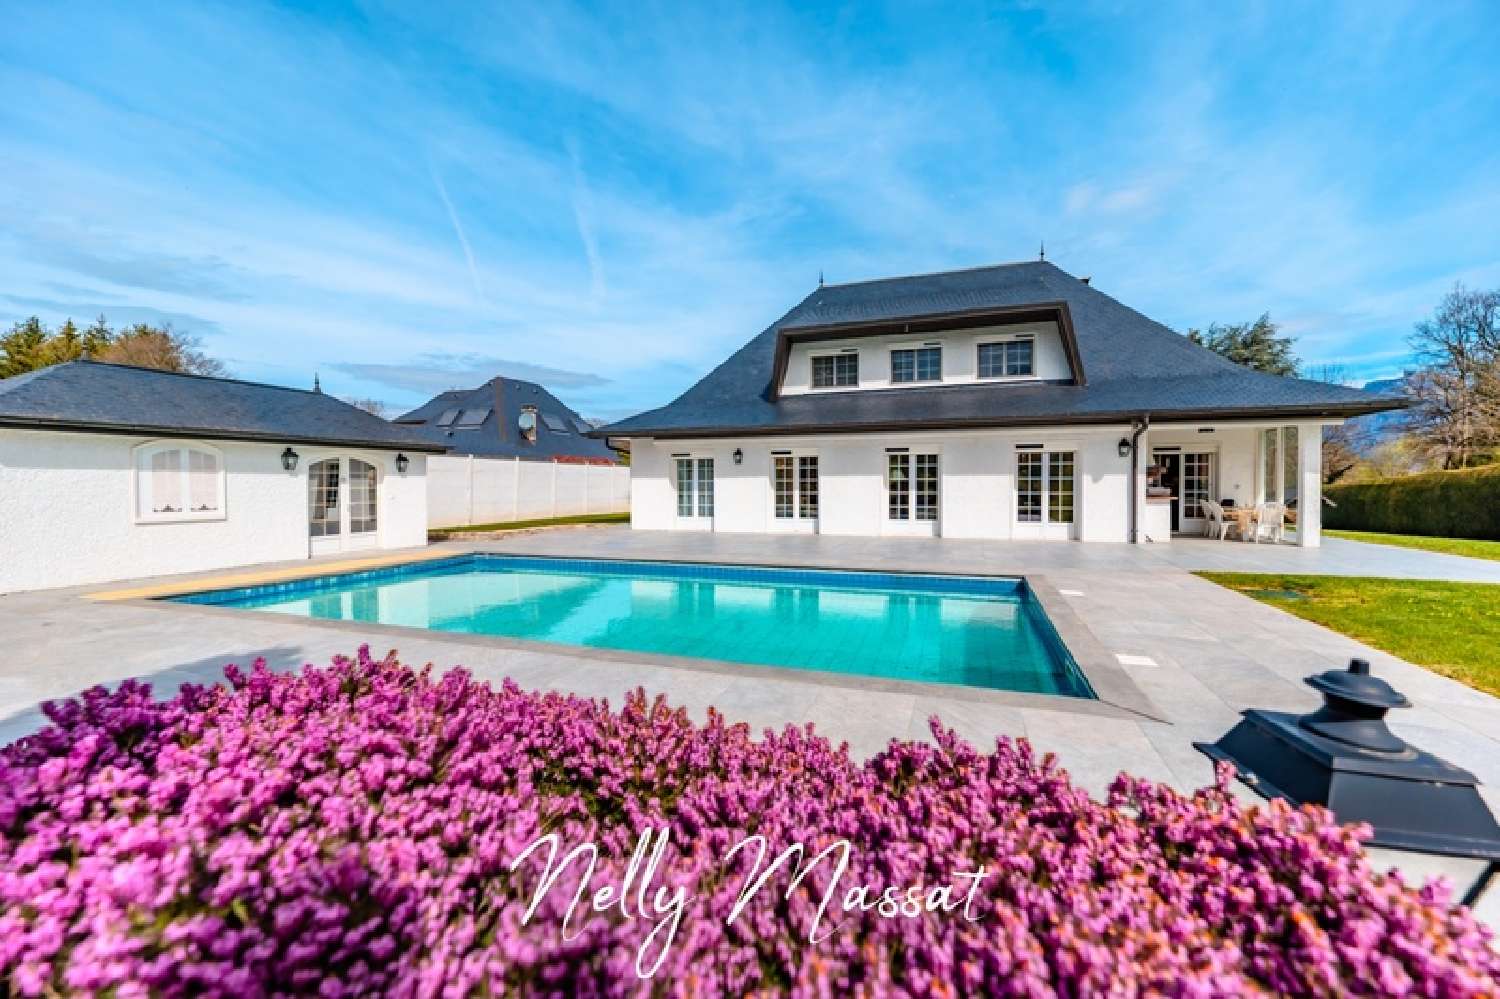  à vendre villa Montagnole Savoie 1